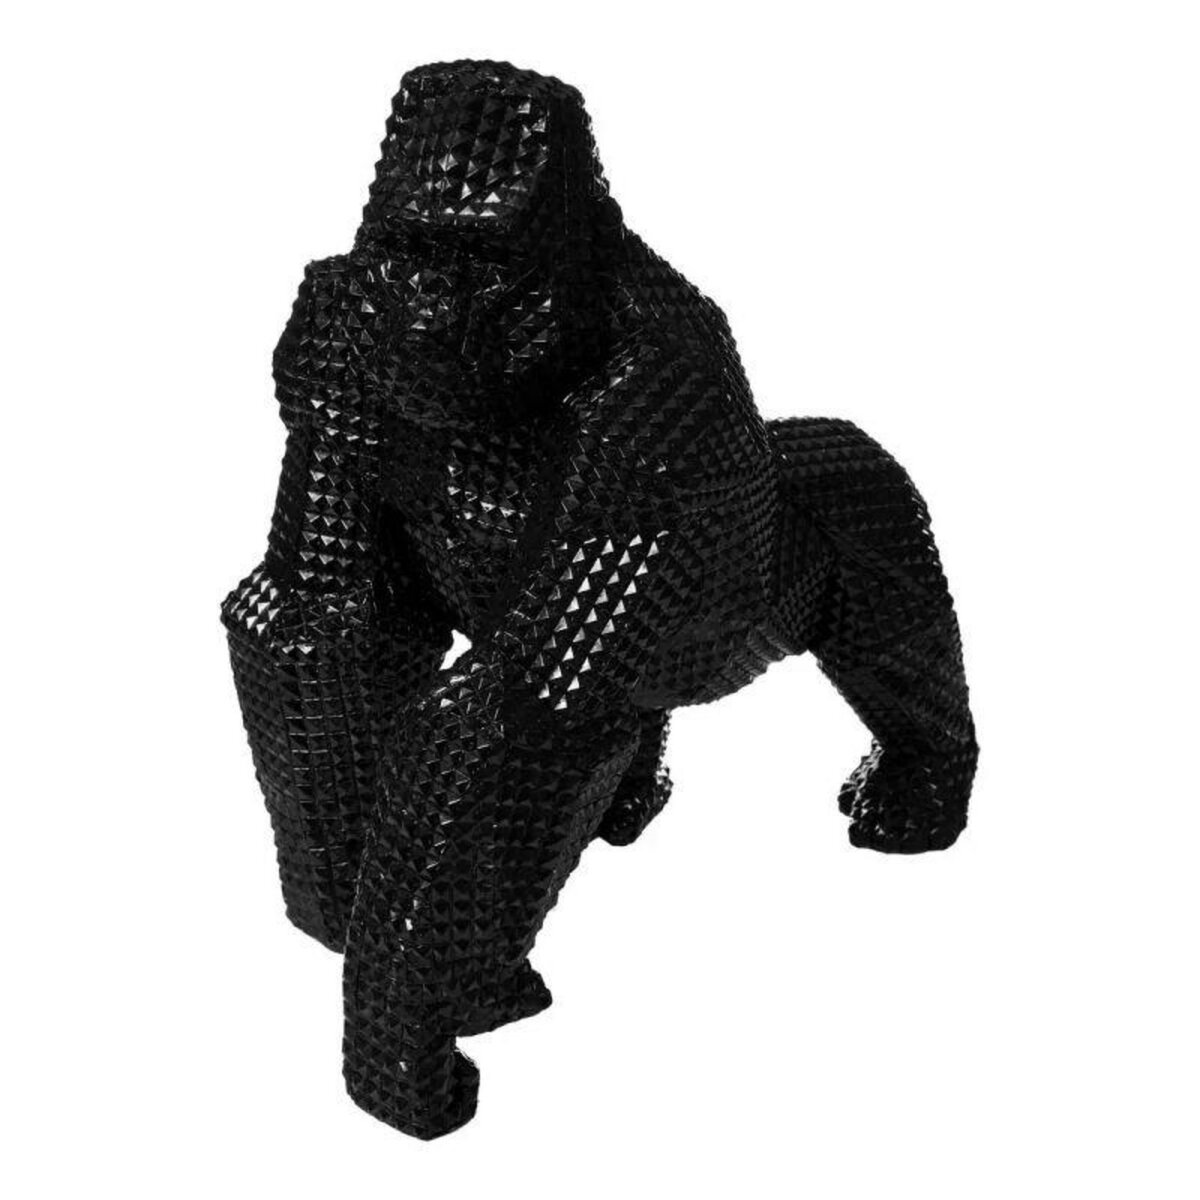  Statuette Gorille Design  Ivan  42cm Noir